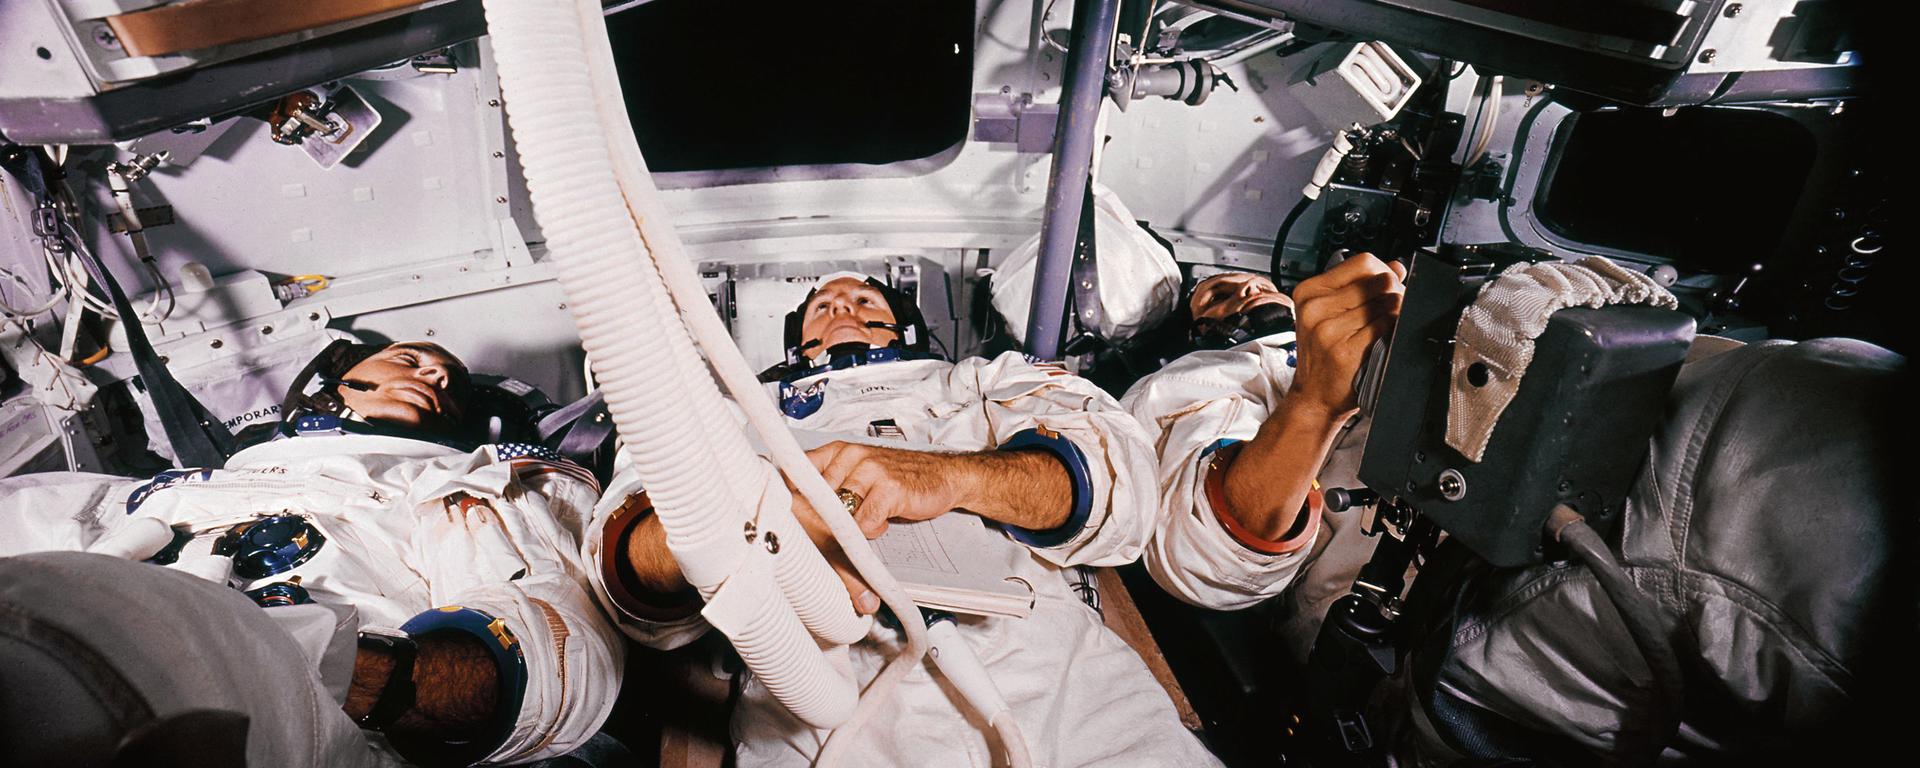 Del Apolo 8 al corralito: otras historias mundiales que se escribieron en Navidad